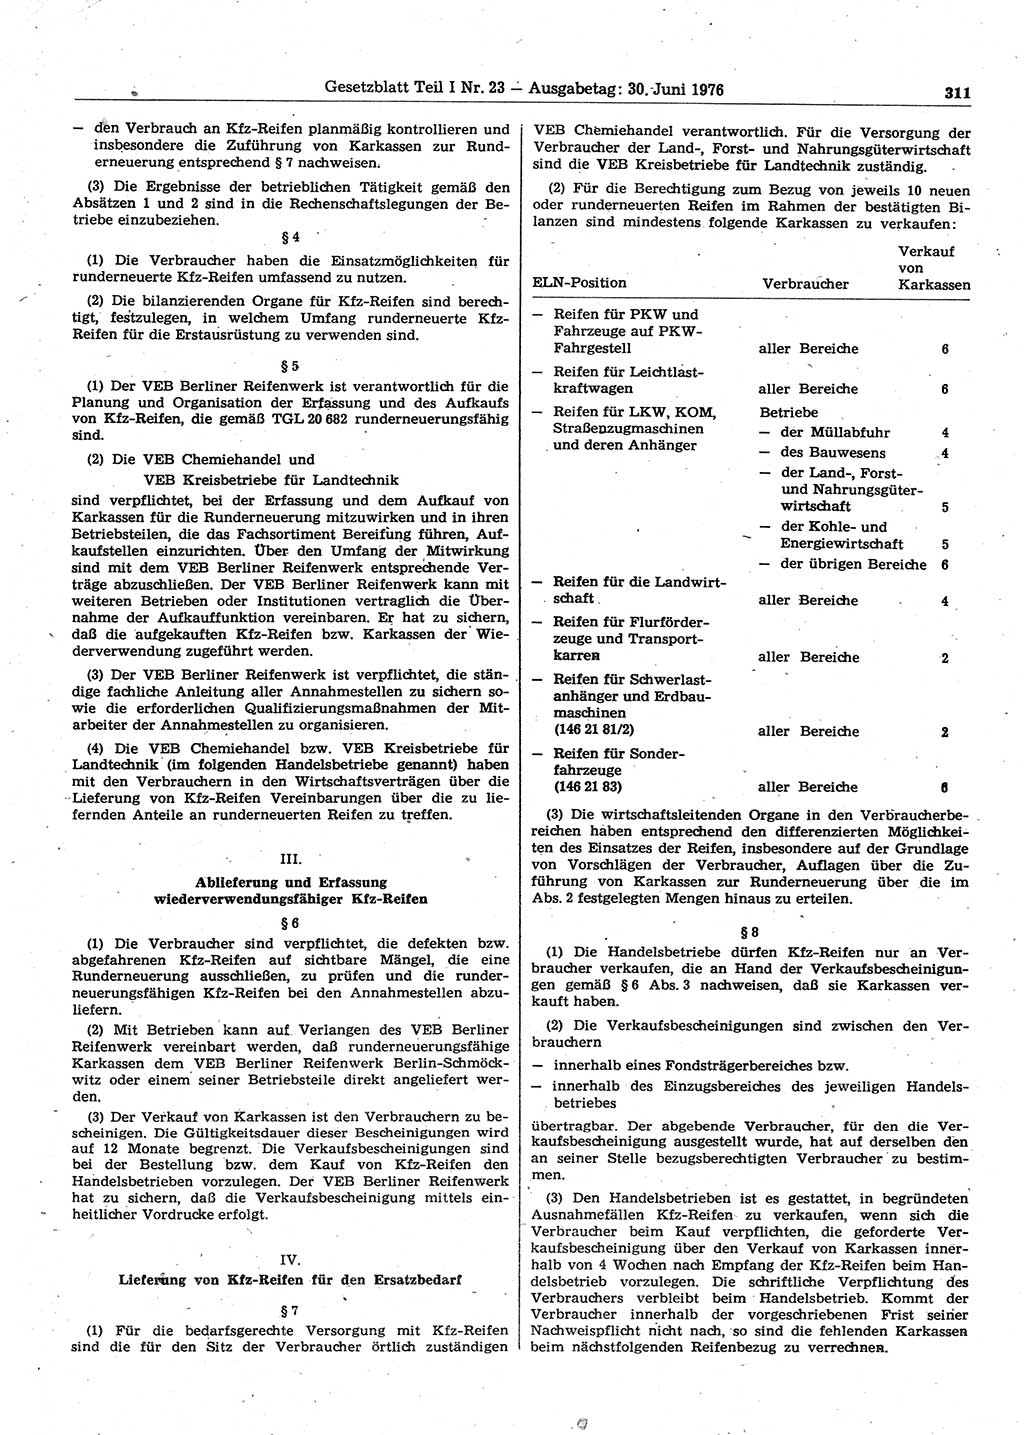 Gesetzblatt (GBl.) der Deutschen Demokratischen Republik (DDR) Teil Ⅰ 1976, Seite 311 (GBl. DDR Ⅰ 1976, S. 311)